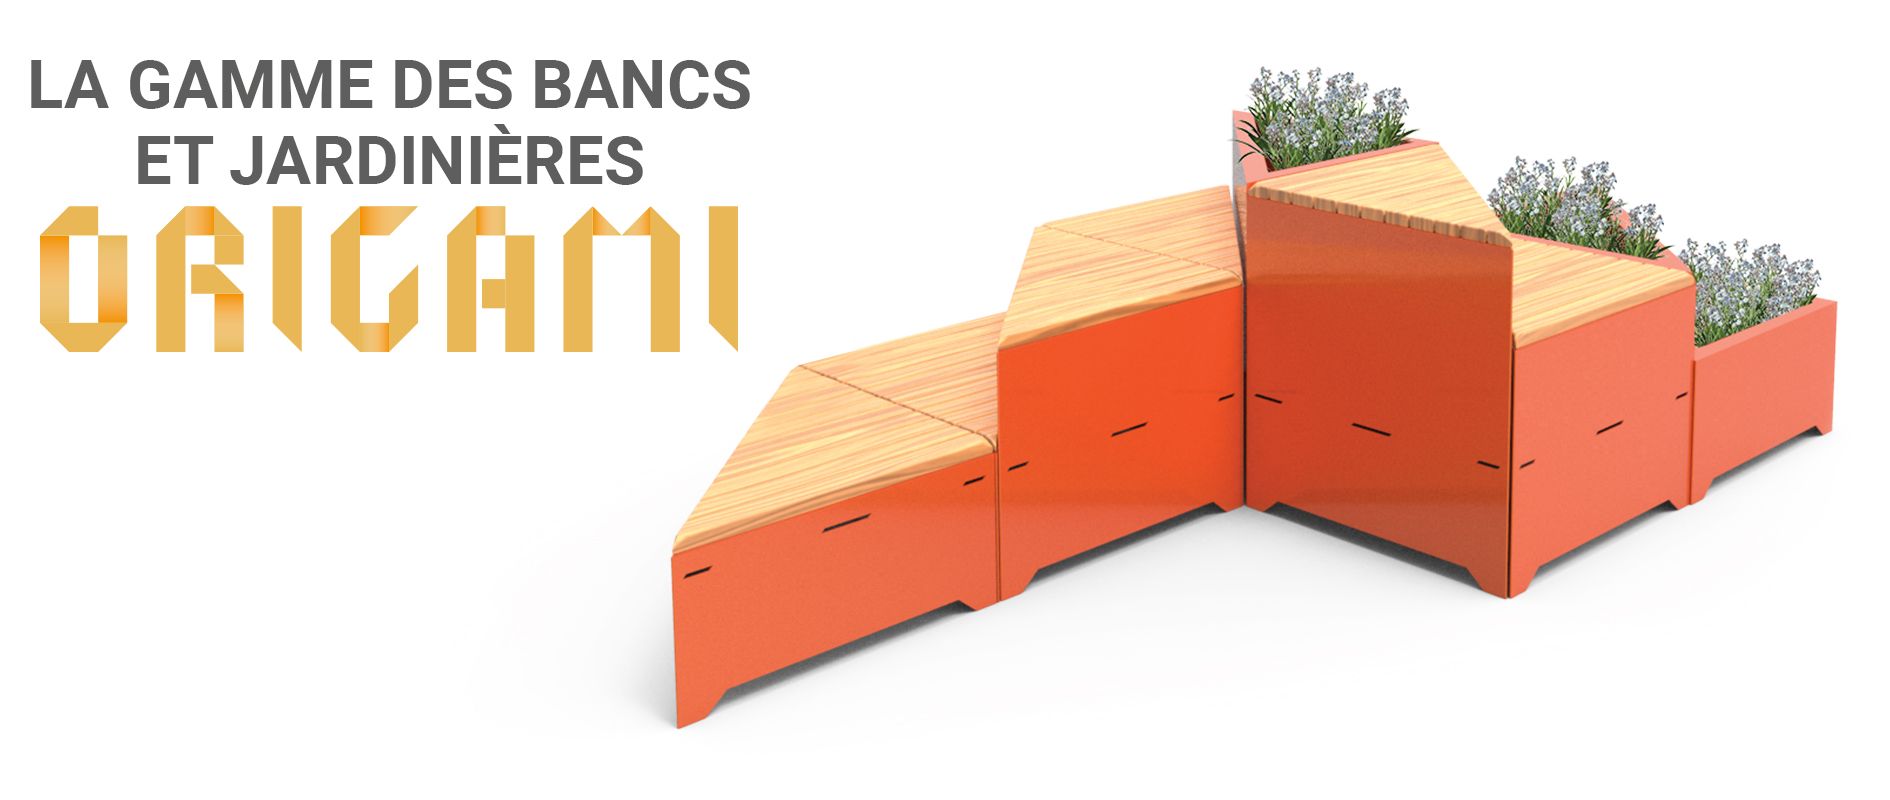 La gamme des bancs et jardinieres Origami ZANO Mobilier urbain